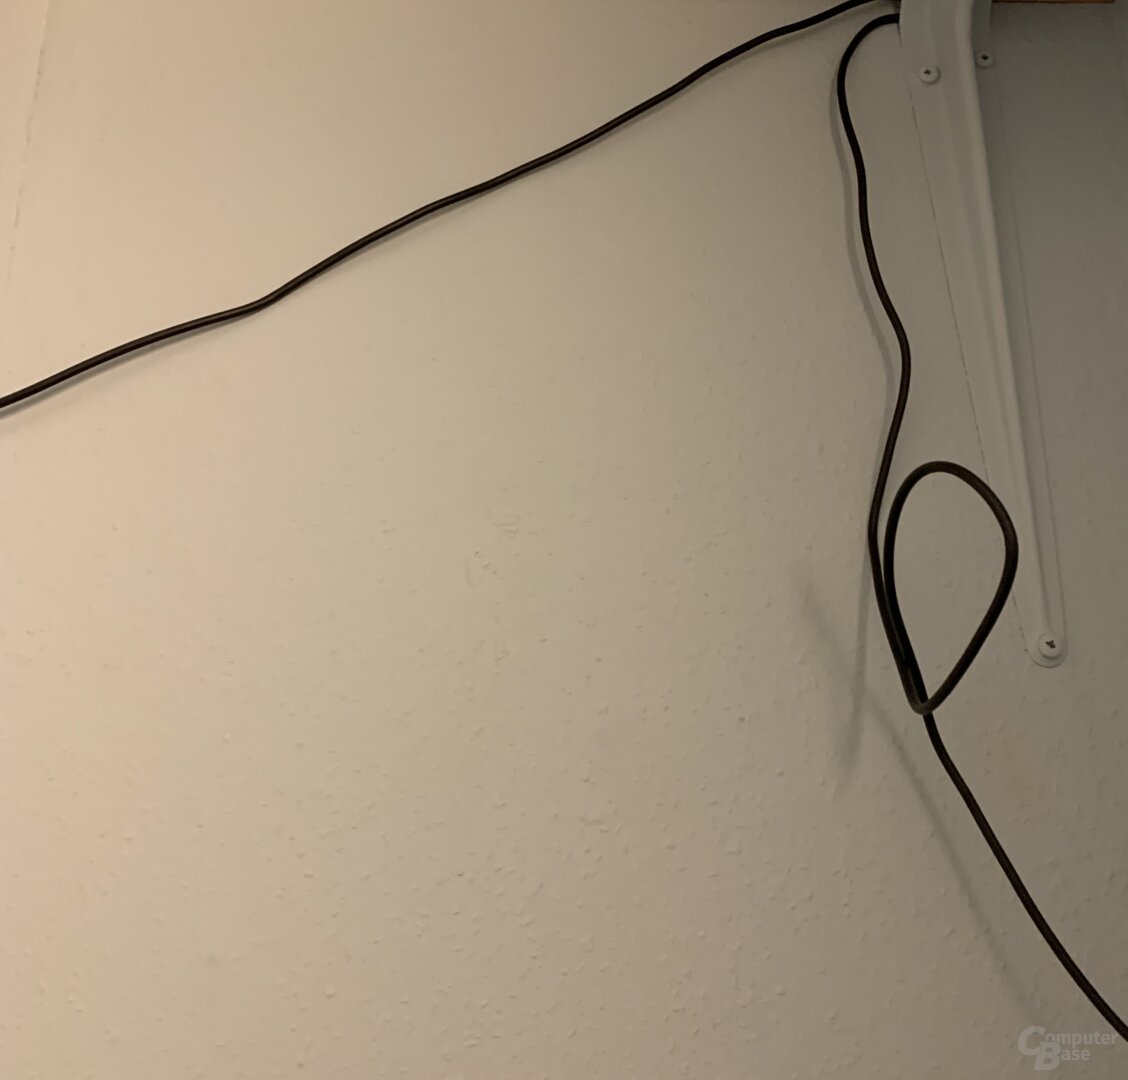 Schwarzes Kabel vor weißer Wand